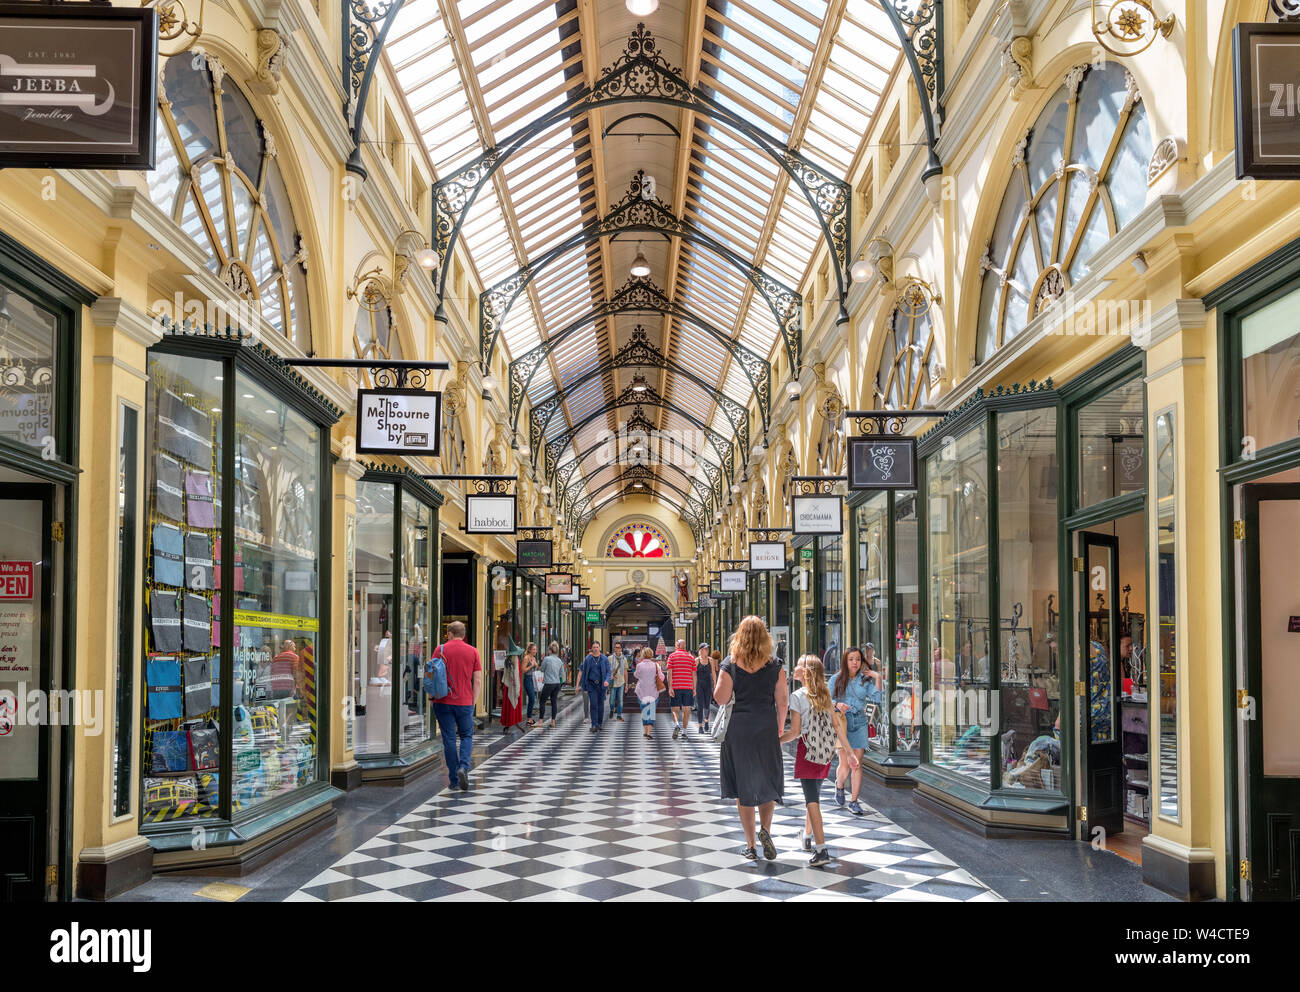 Die Royal Arcade, einem viktorianischen Ära Einkaufszentrum im Central Business District (CBD), Melbourne, Victoria, Australien Stockfoto